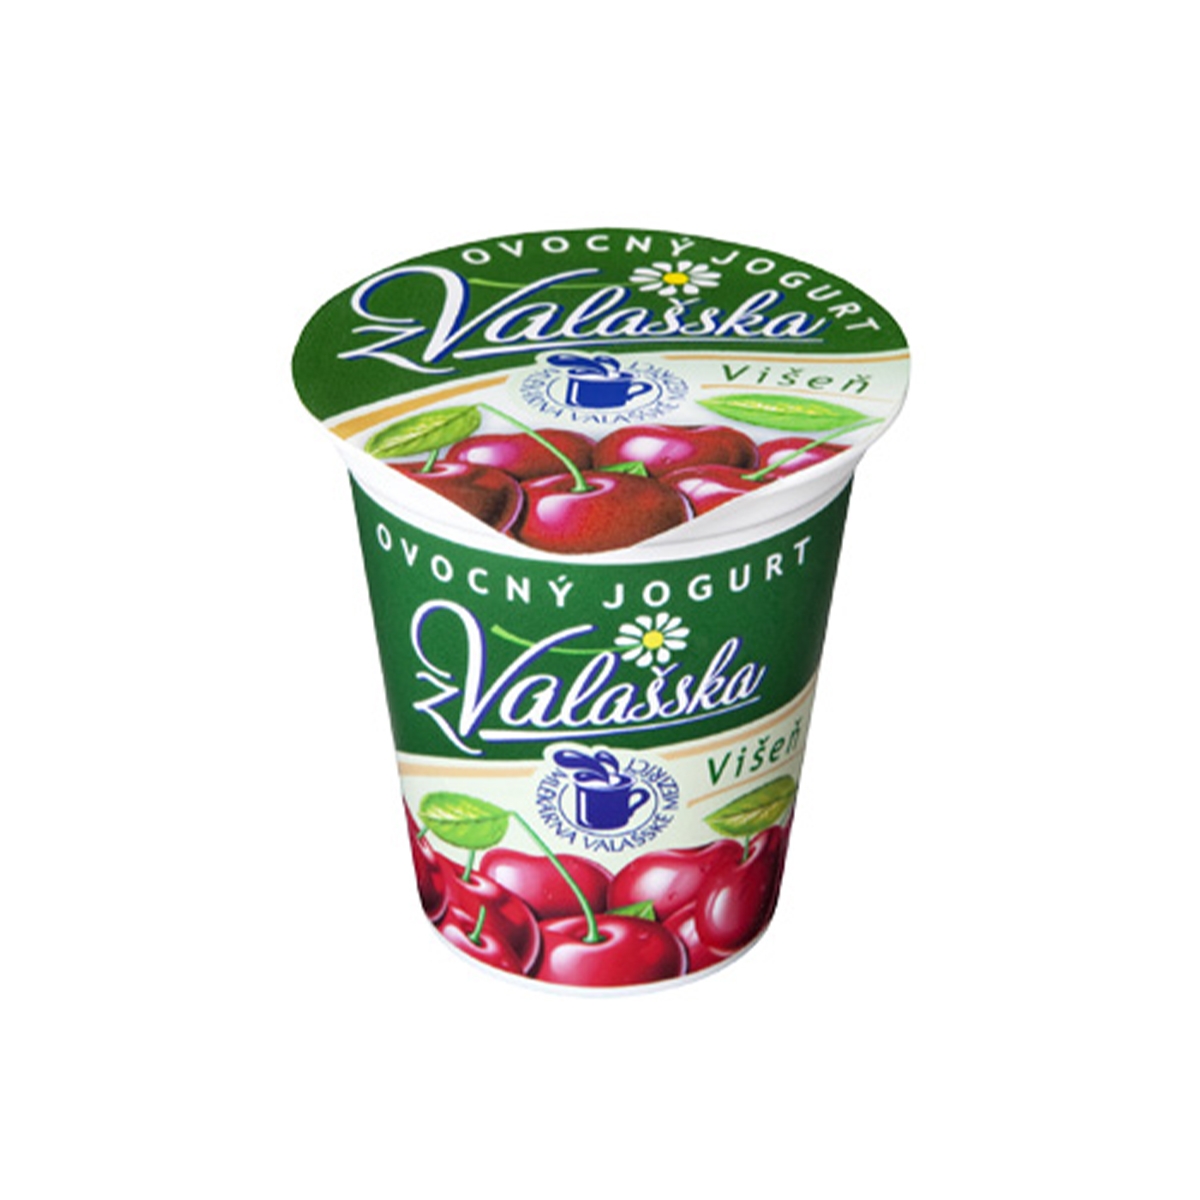 Ovocný jogurt z Valašska višeň 150 g